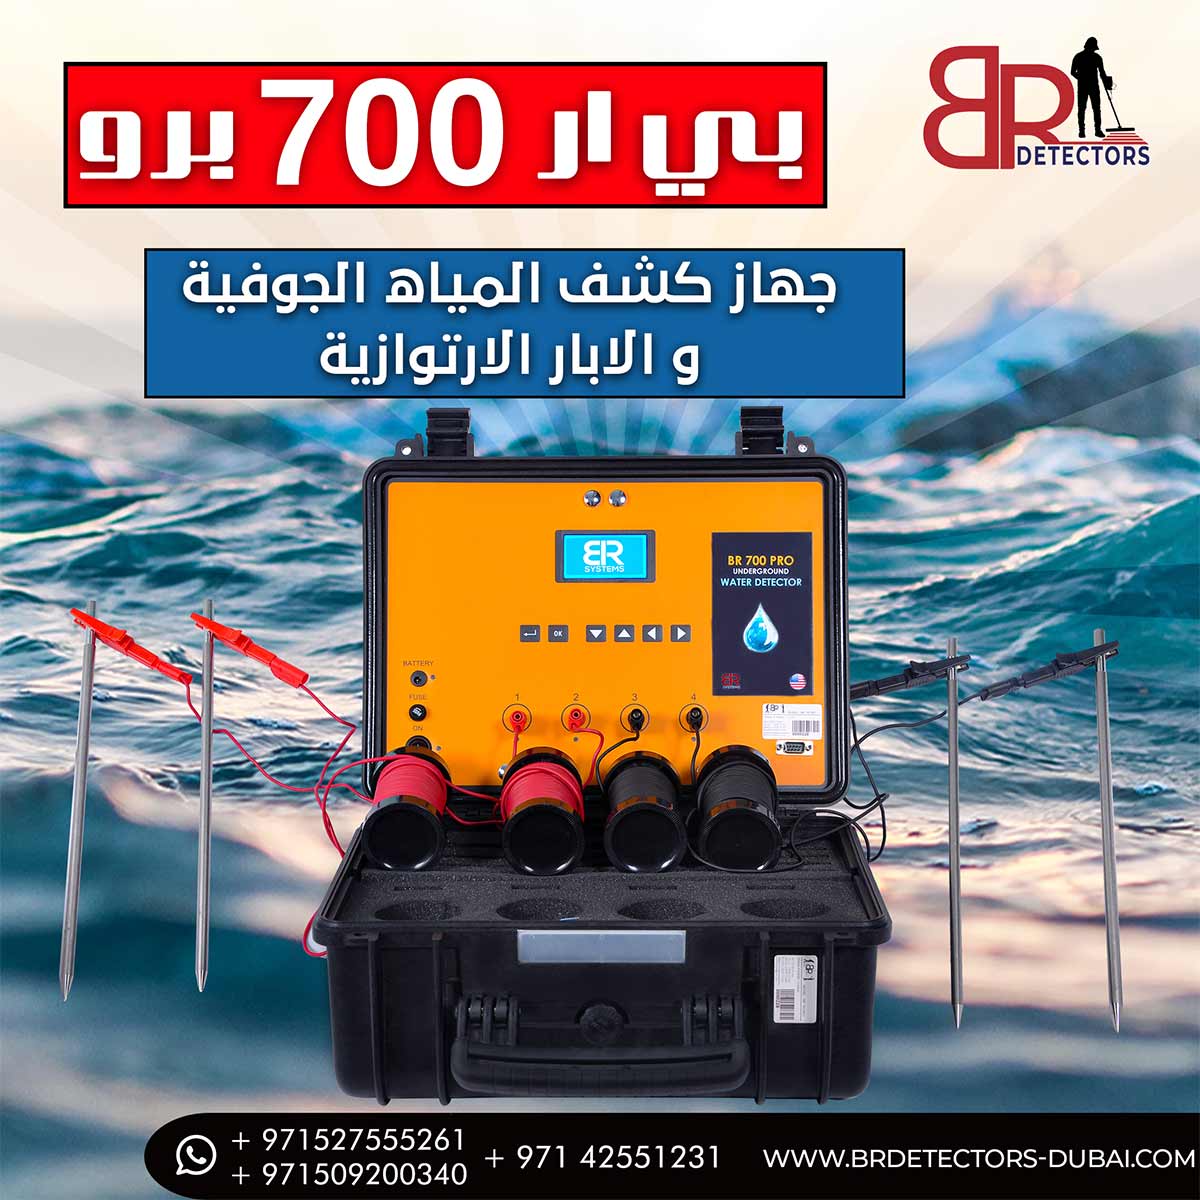 جهاز كشف المياه في الامارات  بي ار 700 برو